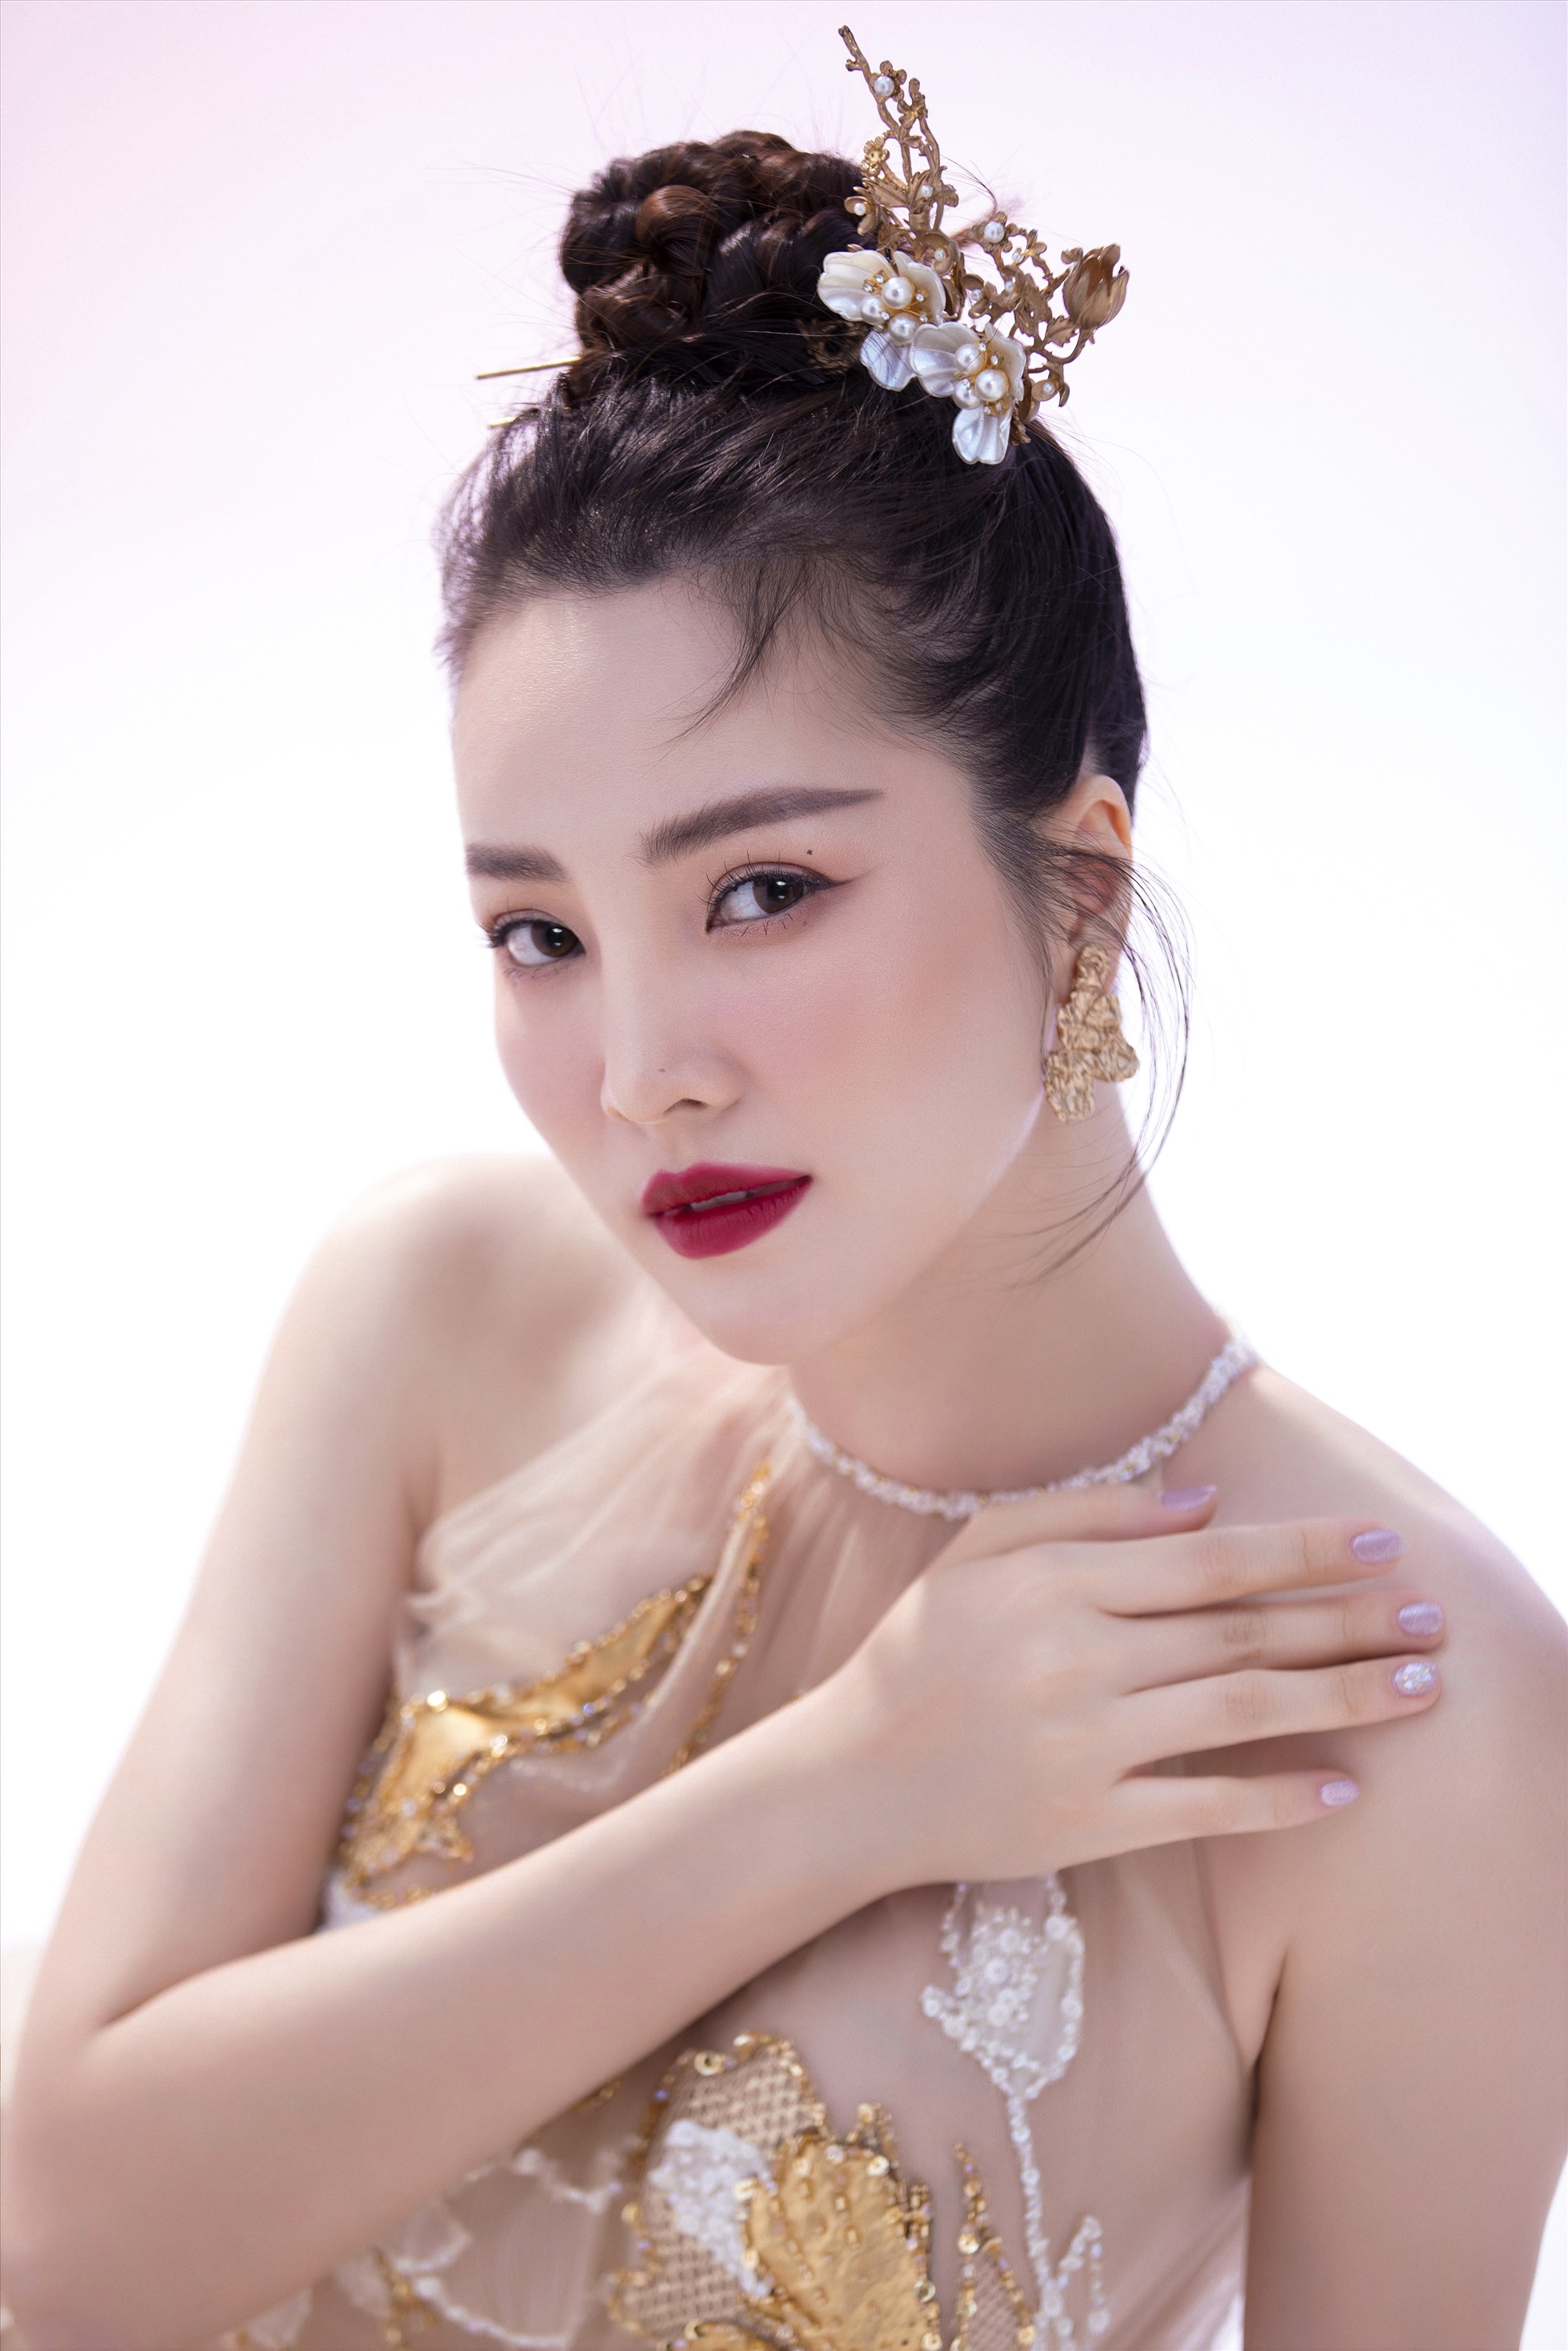 Hành trình đồng hành cùng Hoa hậu Việt Nam 2022 cũng giúp Thụy Vân khép lại một năm thành công viên mãn. Trong năm qua, cô đảm nhiệm vai trò dẫn dắt cho nhiều chương trình lớn, trong đó có show chào xuân vào mùng 1 Tết, chung kết Miss World Vietnam 2022... và đặc biệt là bán kết SEA Games 31.